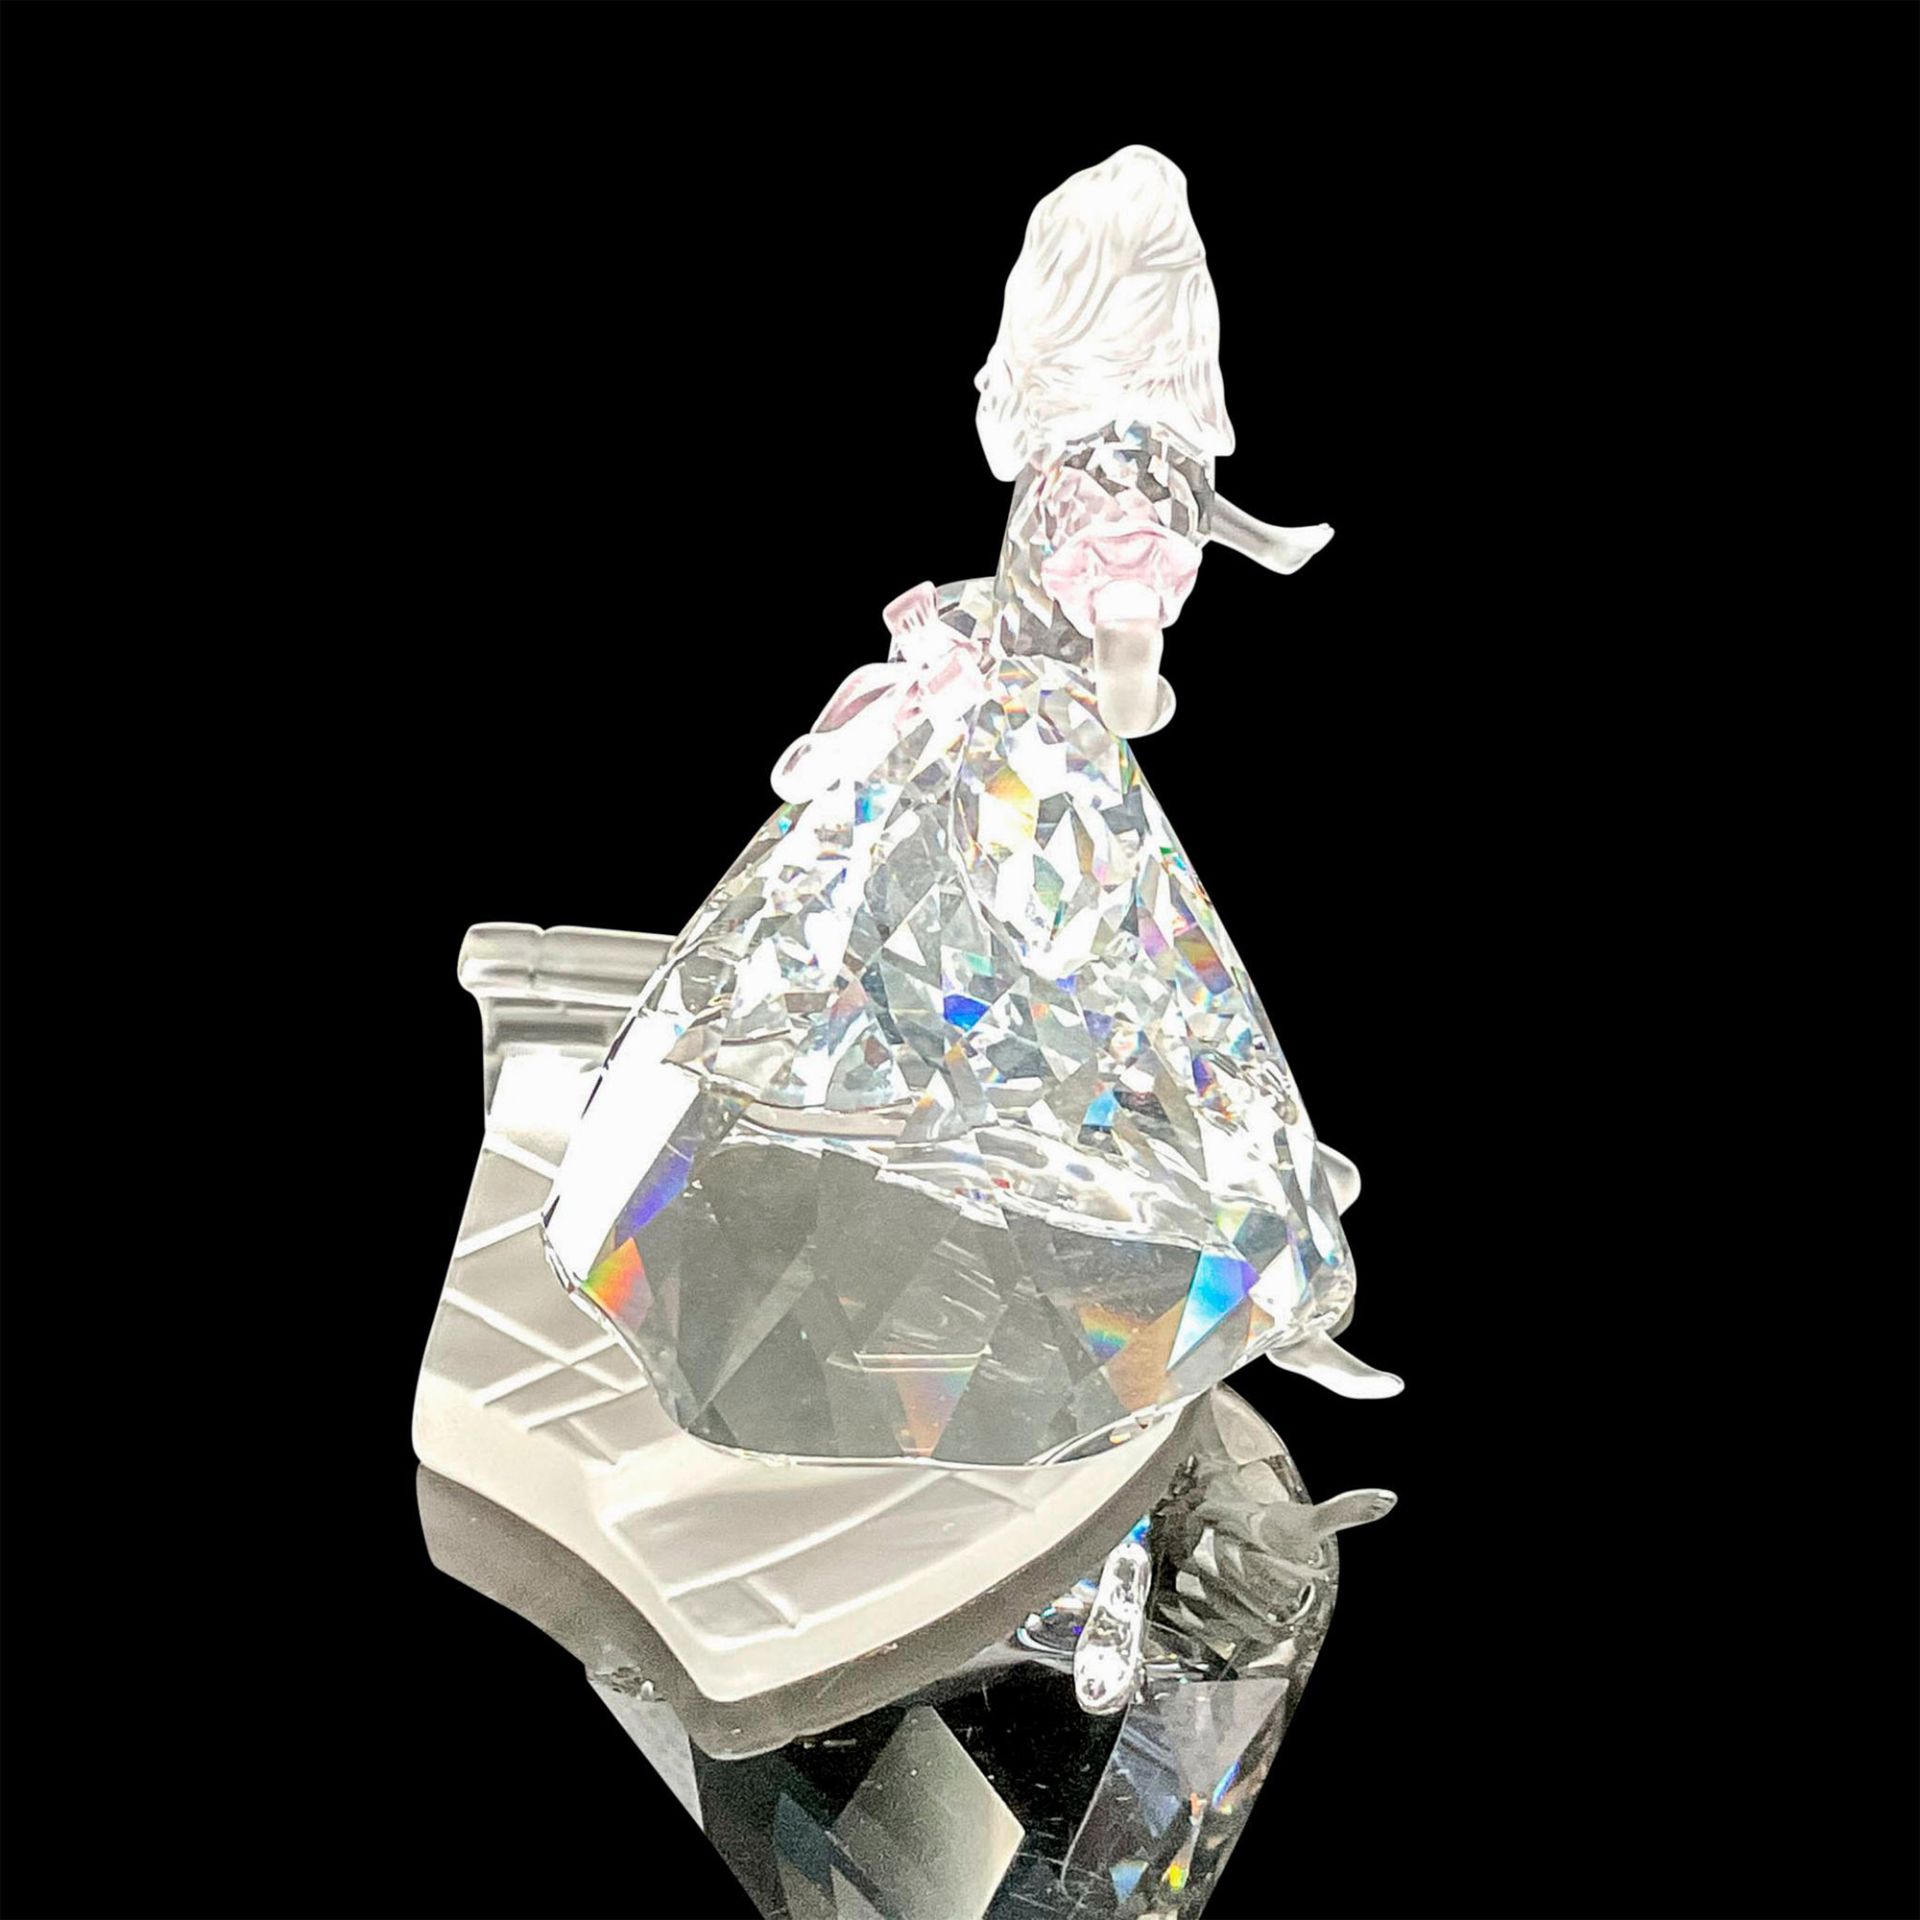 Swarovski Crystal Figurine, Cinderella with Glass Slipper - Image 2 of 5